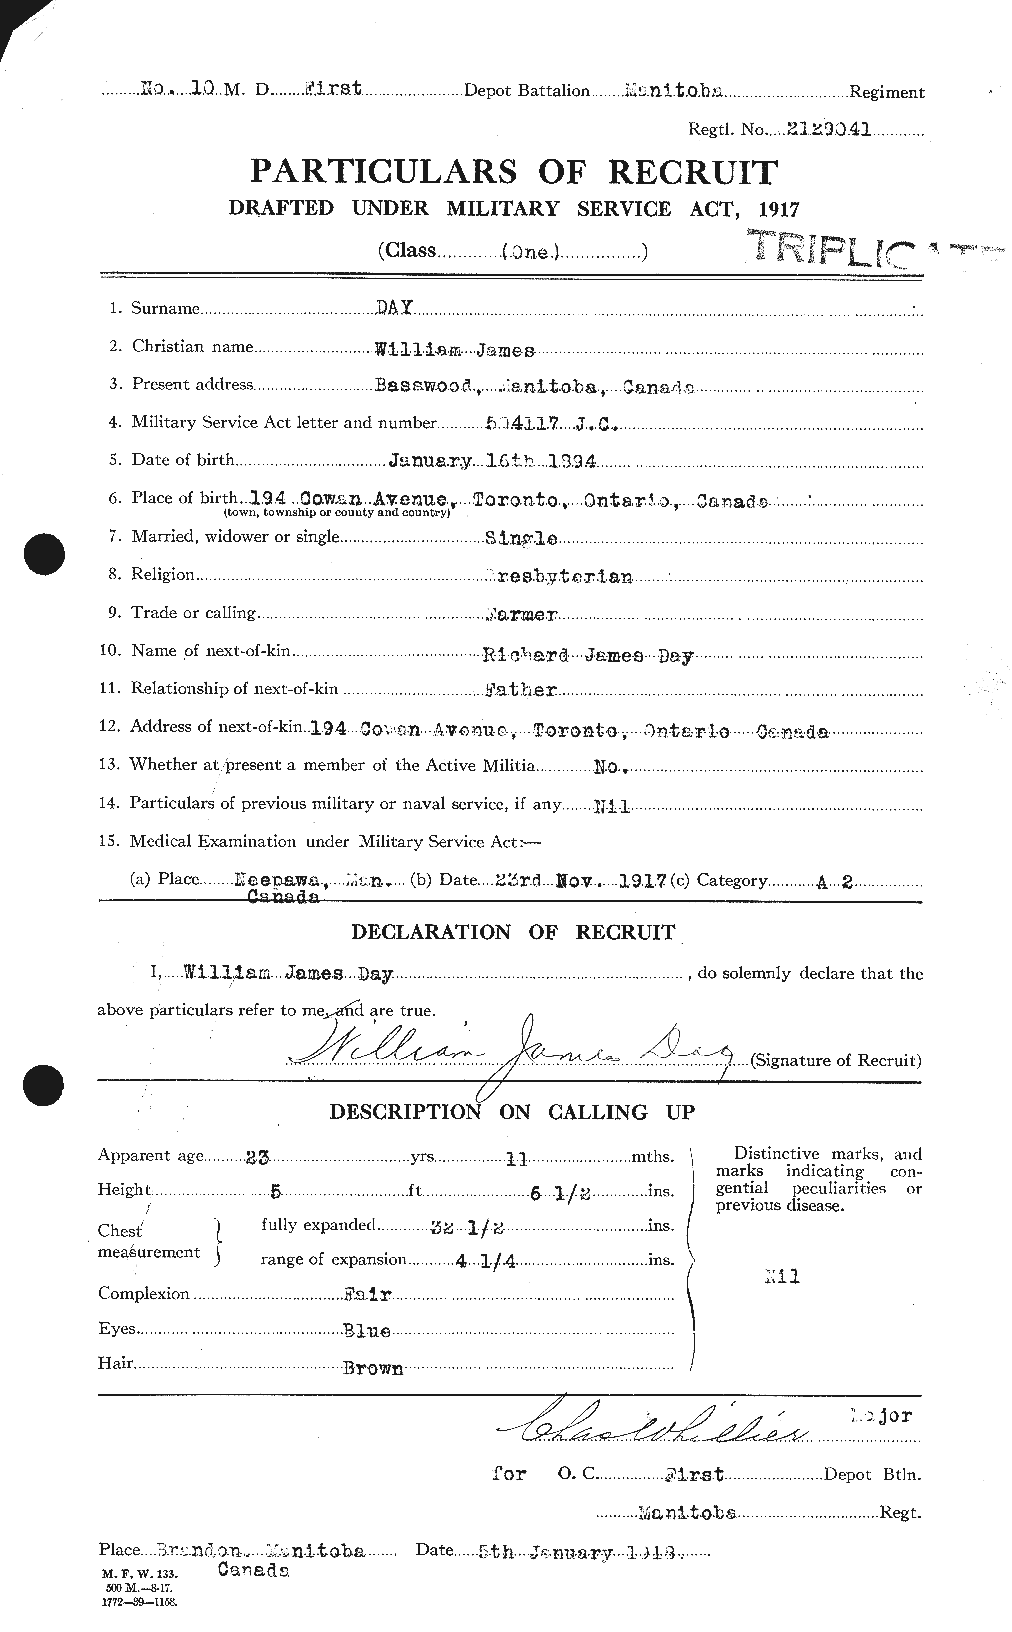 Dossiers du Personnel de la Première Guerre mondiale - CEC 283543a